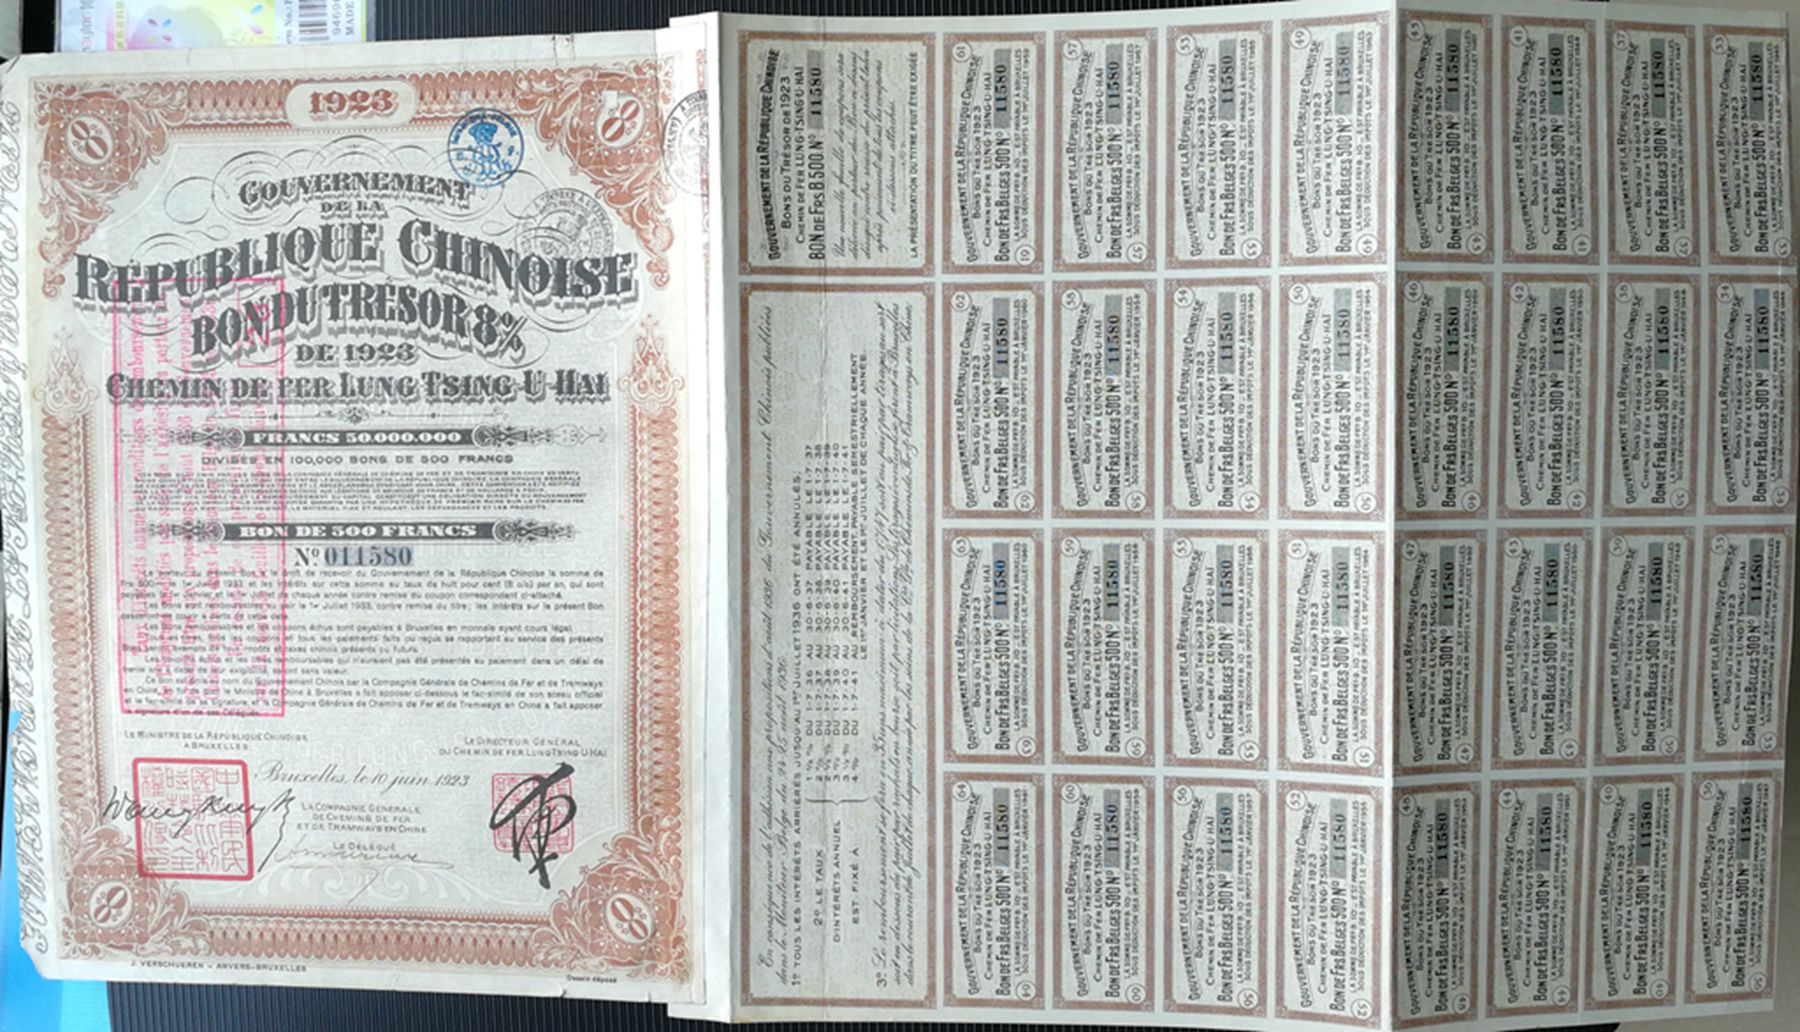 B9045, China 8% Lung-Tsing-U-Hai Railway Bond, 500 Frances Loan 1923